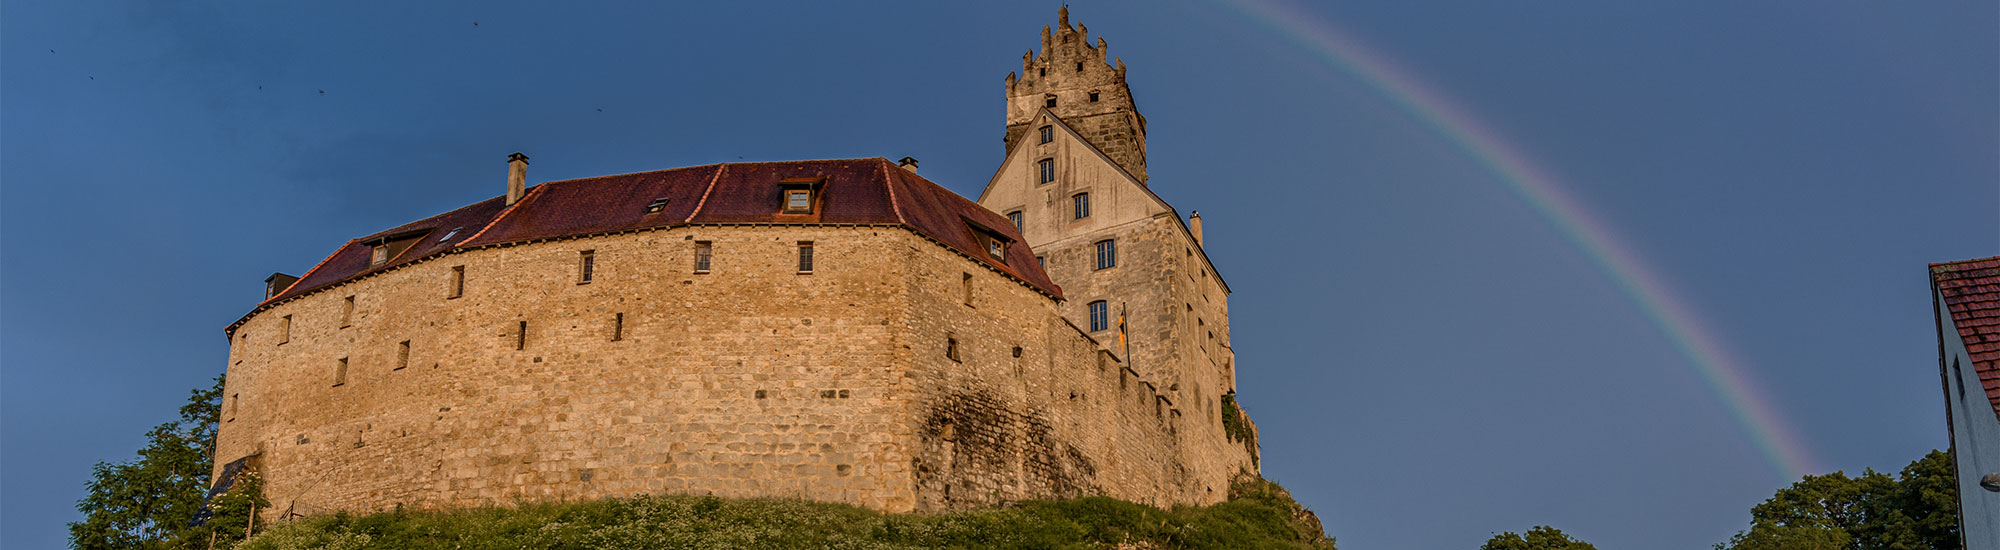 Burg-Katzenstein